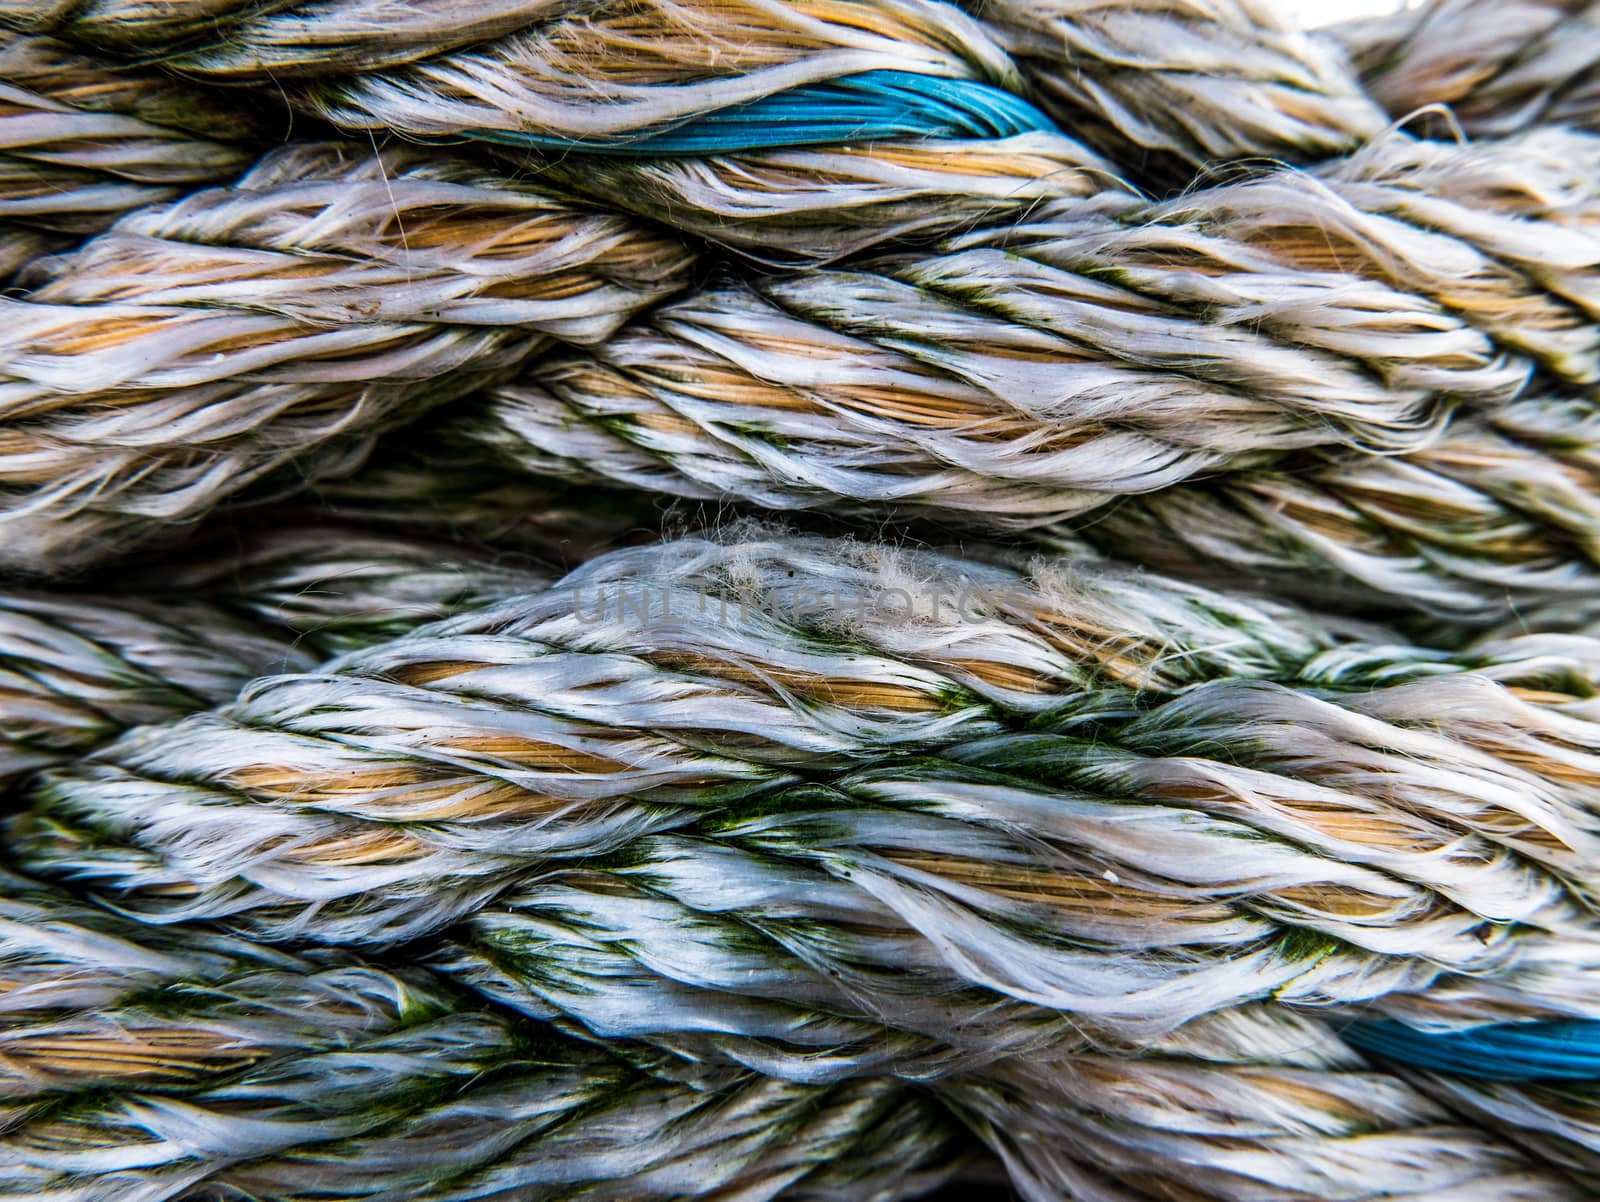 Nautical Rope Texture by mrdoomits